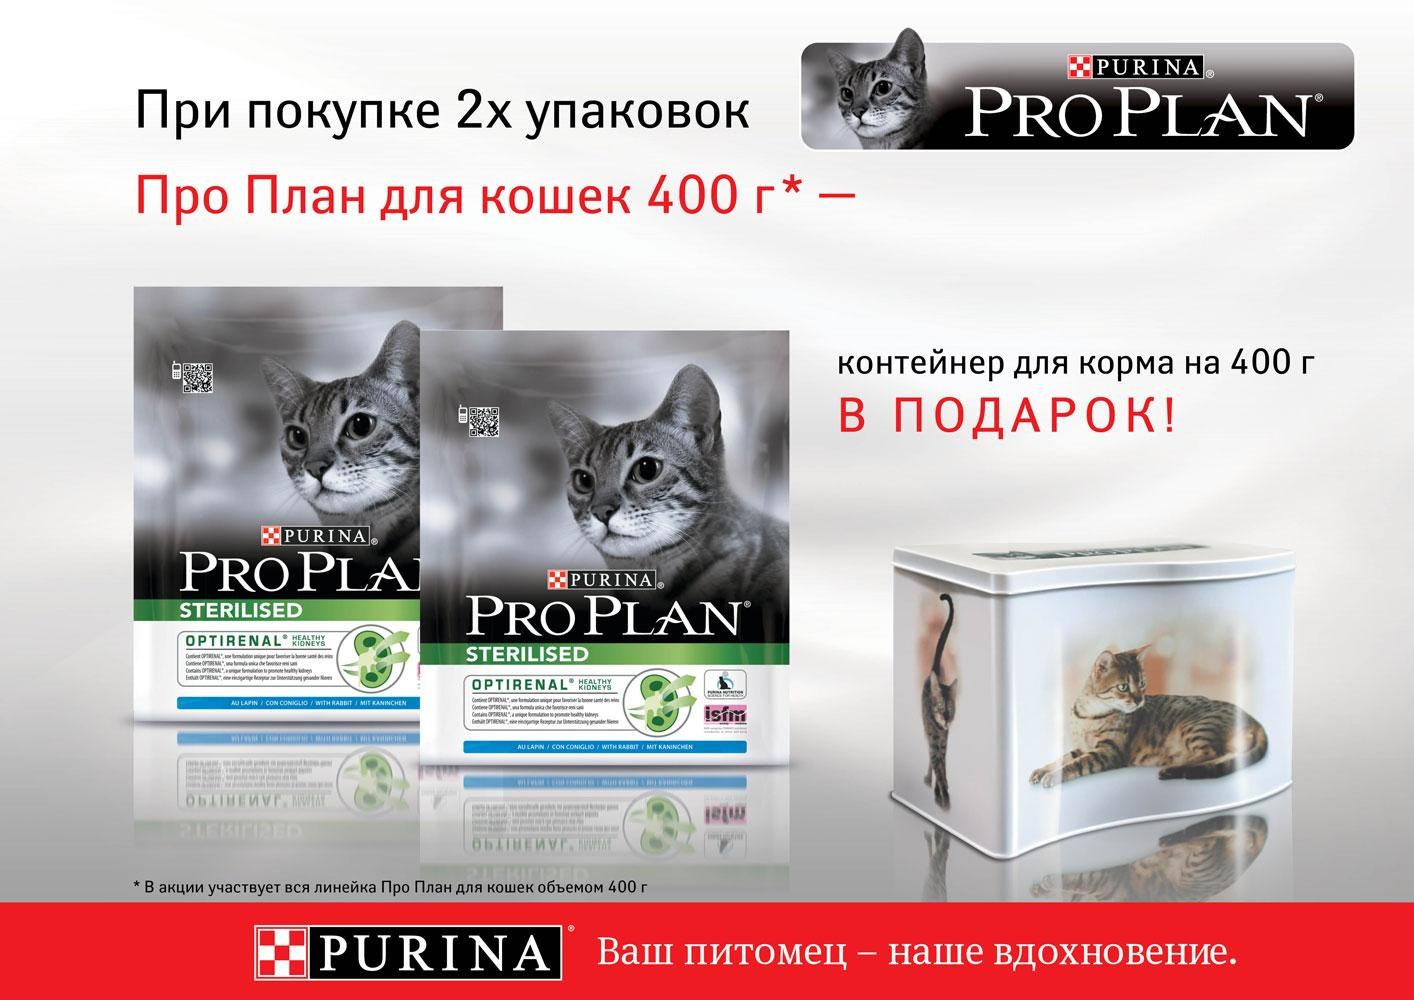 Корм для кошек проплан купить в москве. Purina Pro Plan корм Purina Pro Plan. Корма для кошек Пурина Проплан. Purina Pro Plan баннер. Пурина про план для кошек.